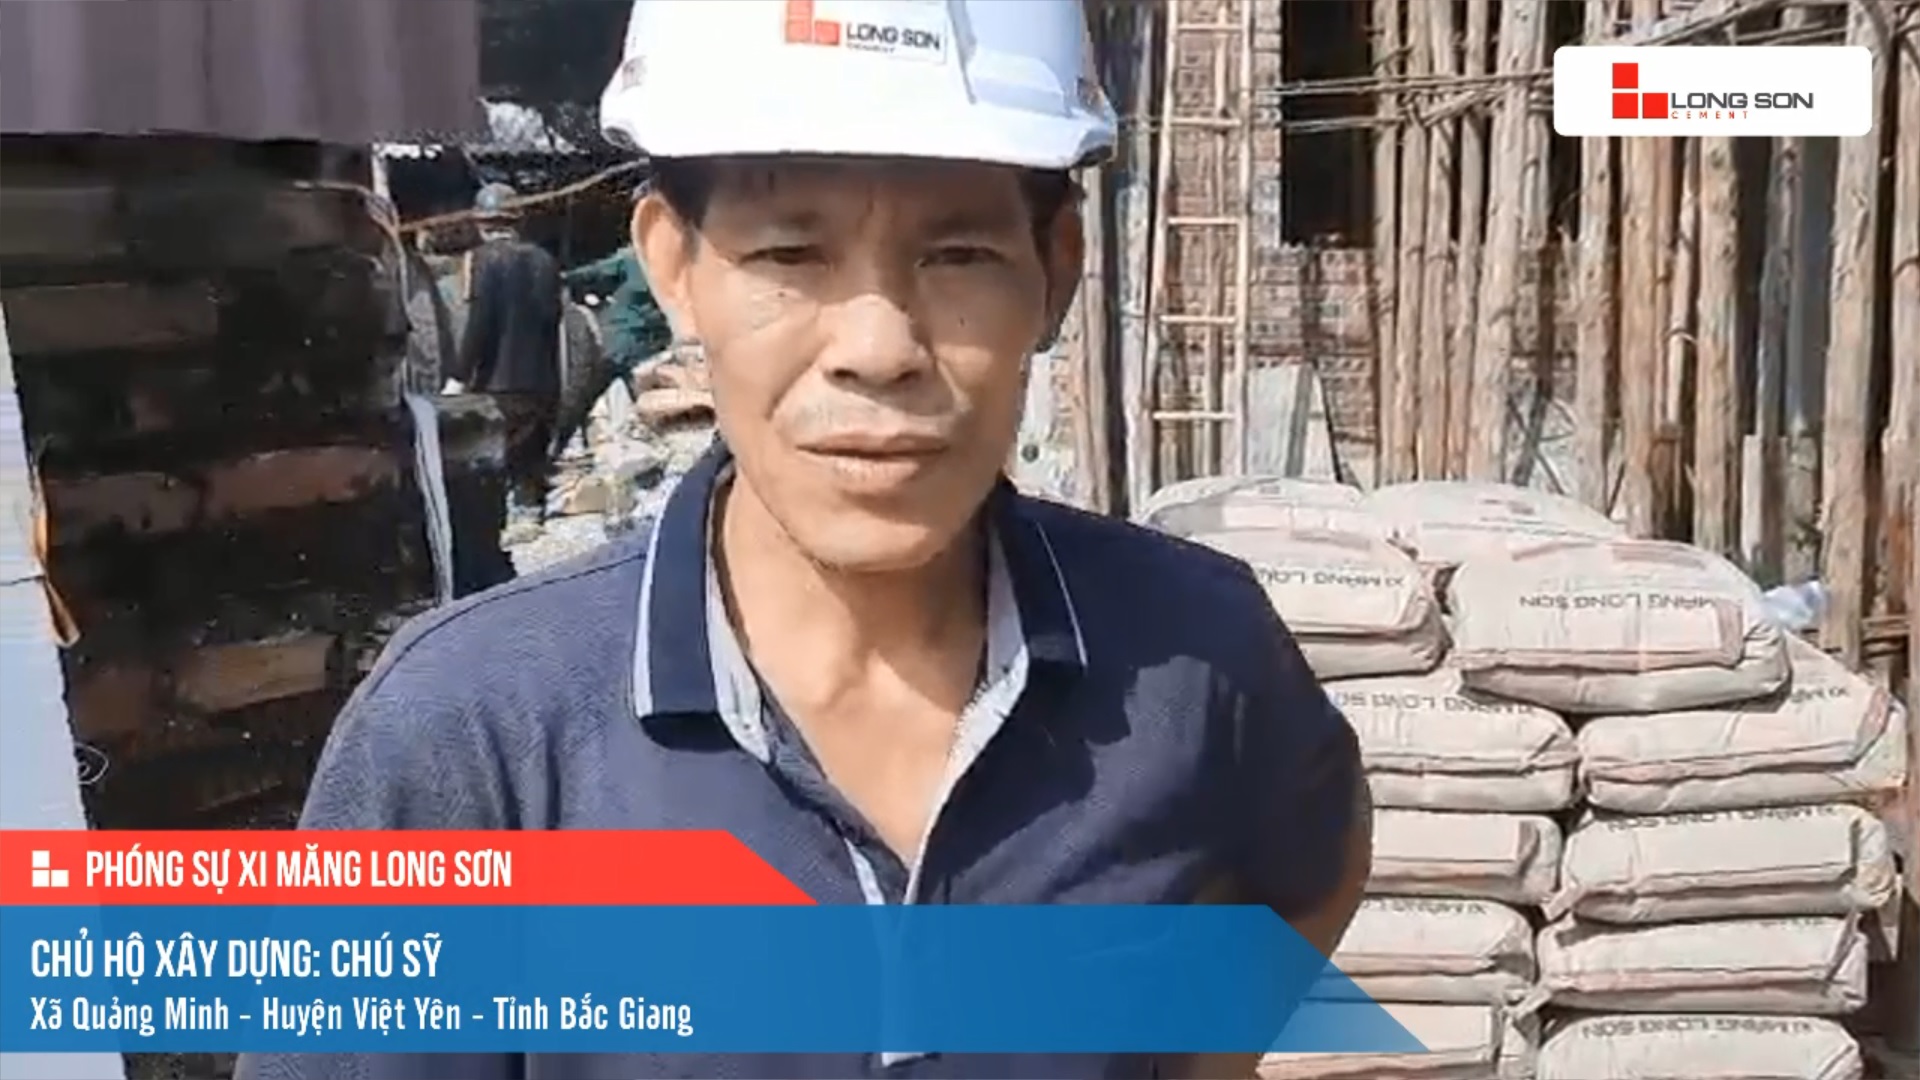 Phóng sự công trình sử dụng Xi măng Long Sơn tại Bắc Giang ngày 20/10/2021